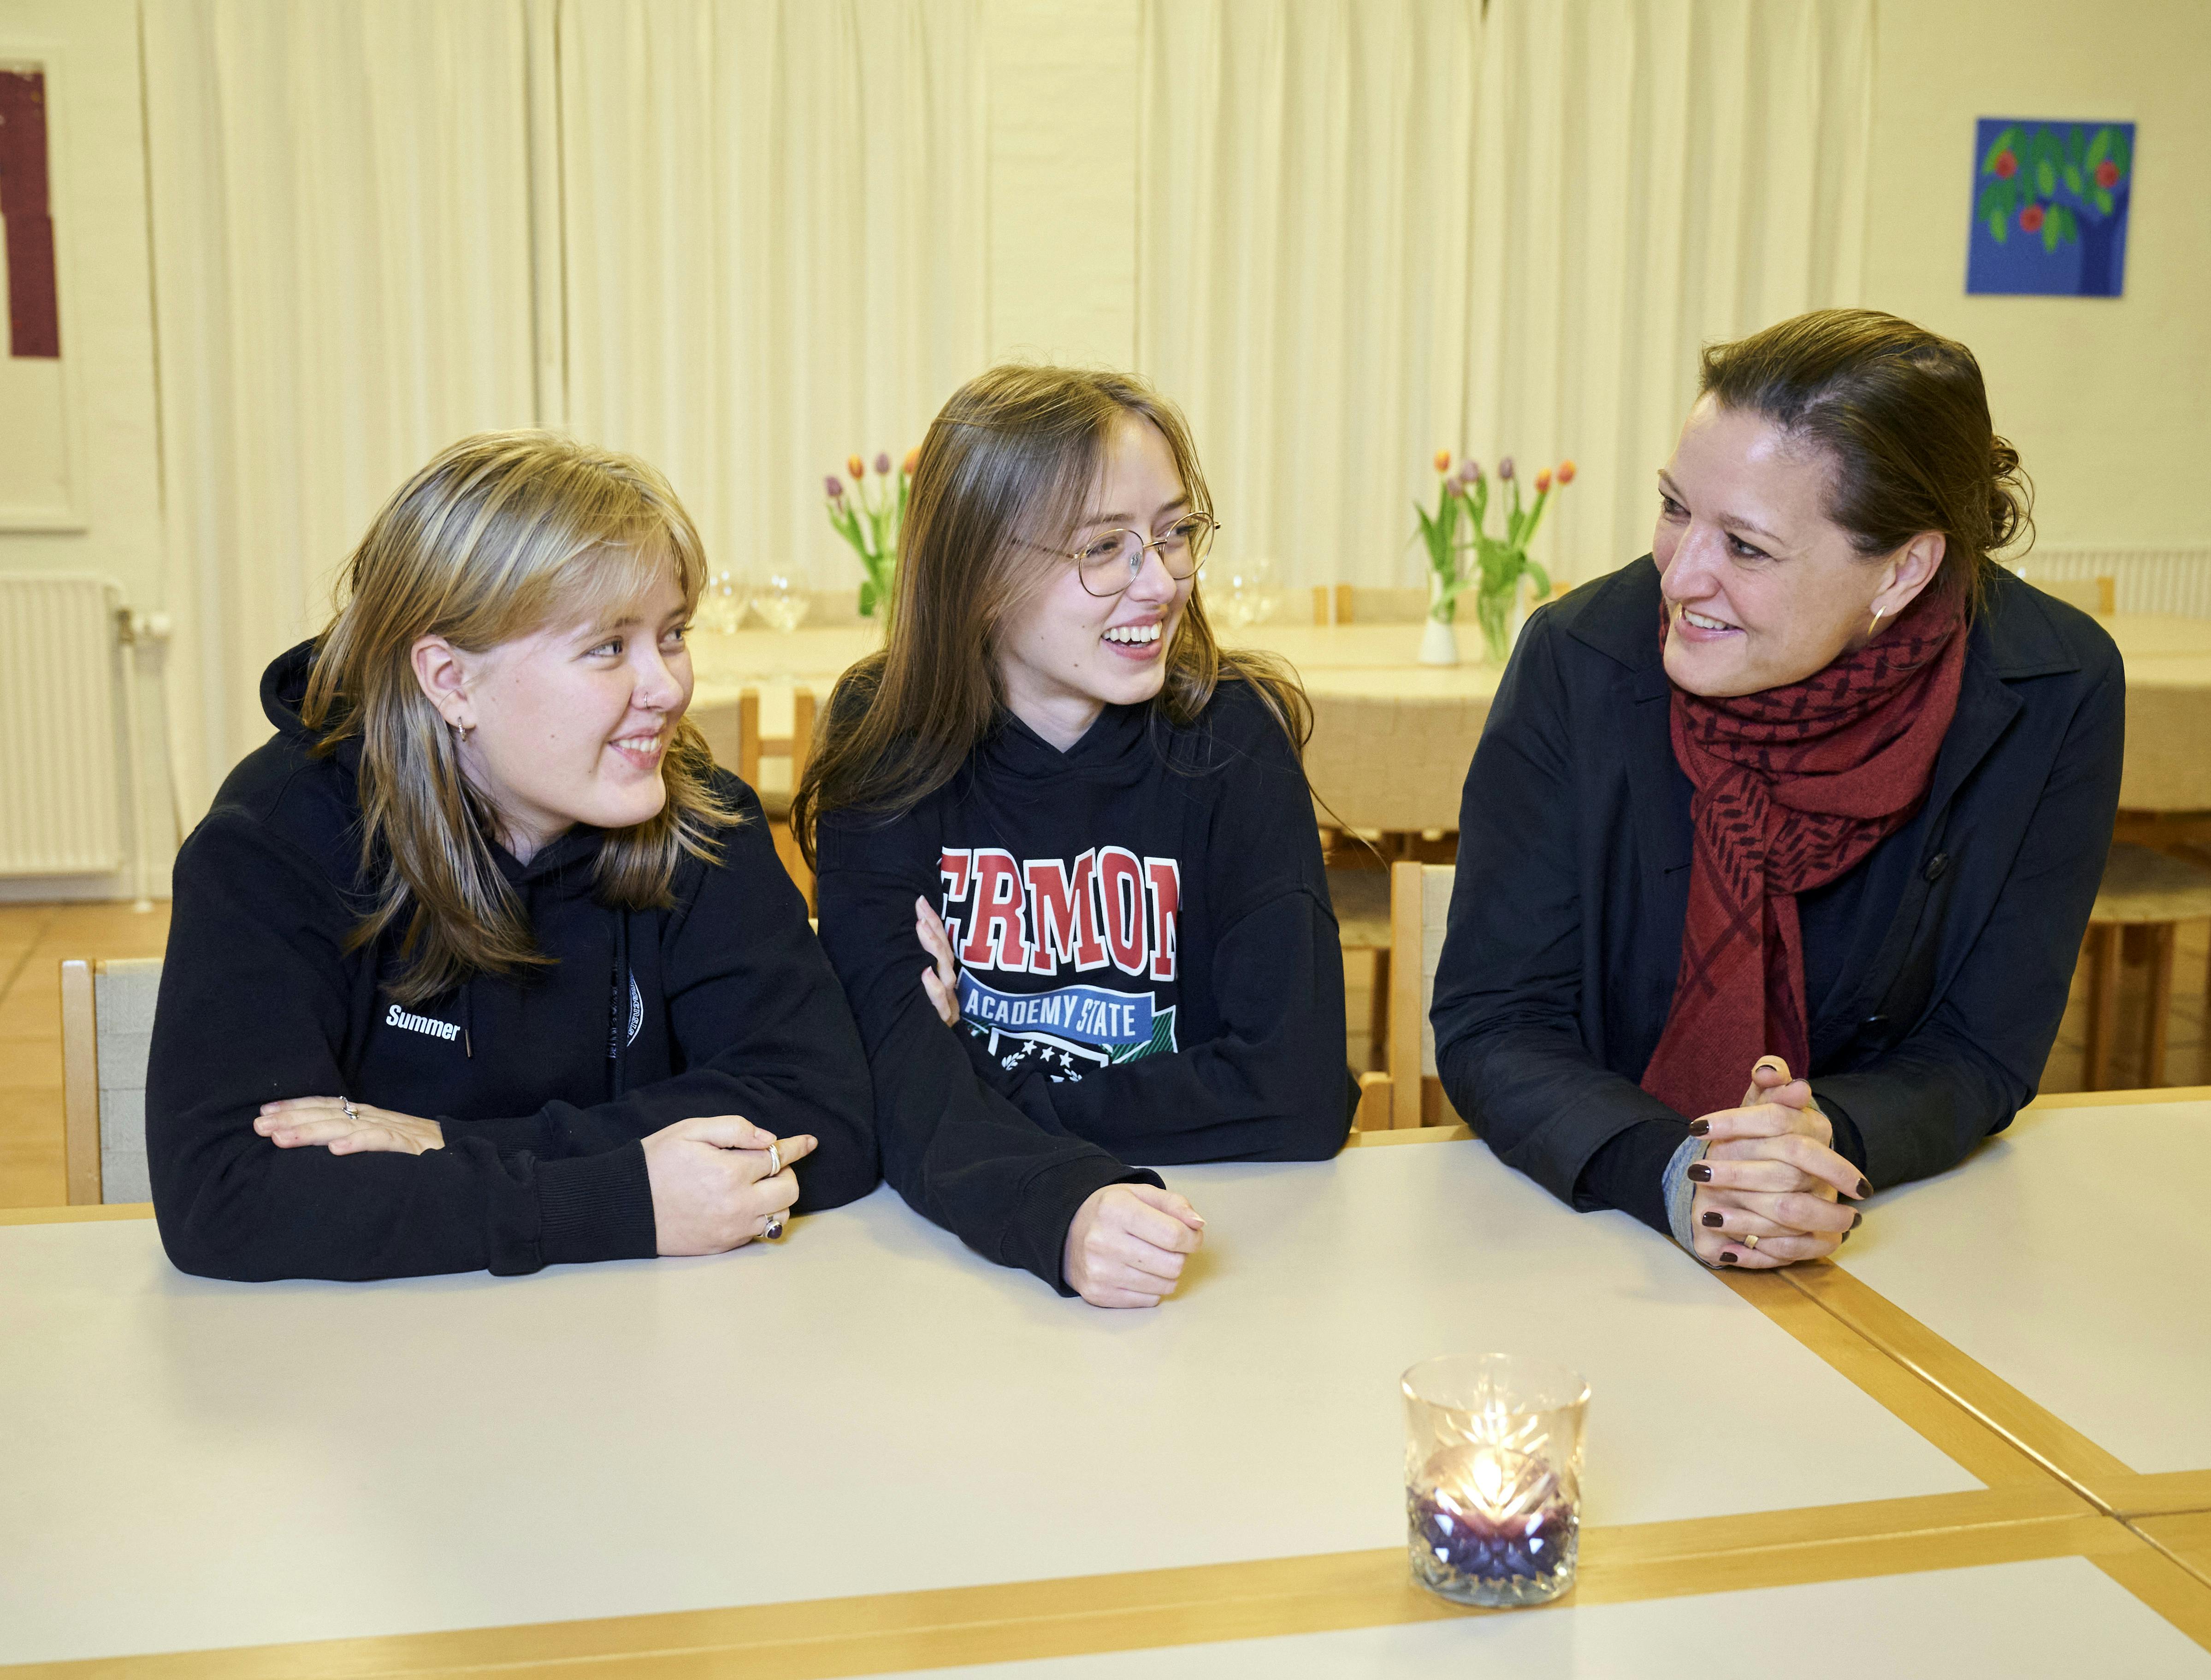 Sognepræst Ane Sund Katborg fra Sulsted Sogn med tvillingerne Summer og Jasmin Anderson, der har deltaget i en af hendes samtalegrupper for skilsmissebørn, da de gik i 3. klasse.